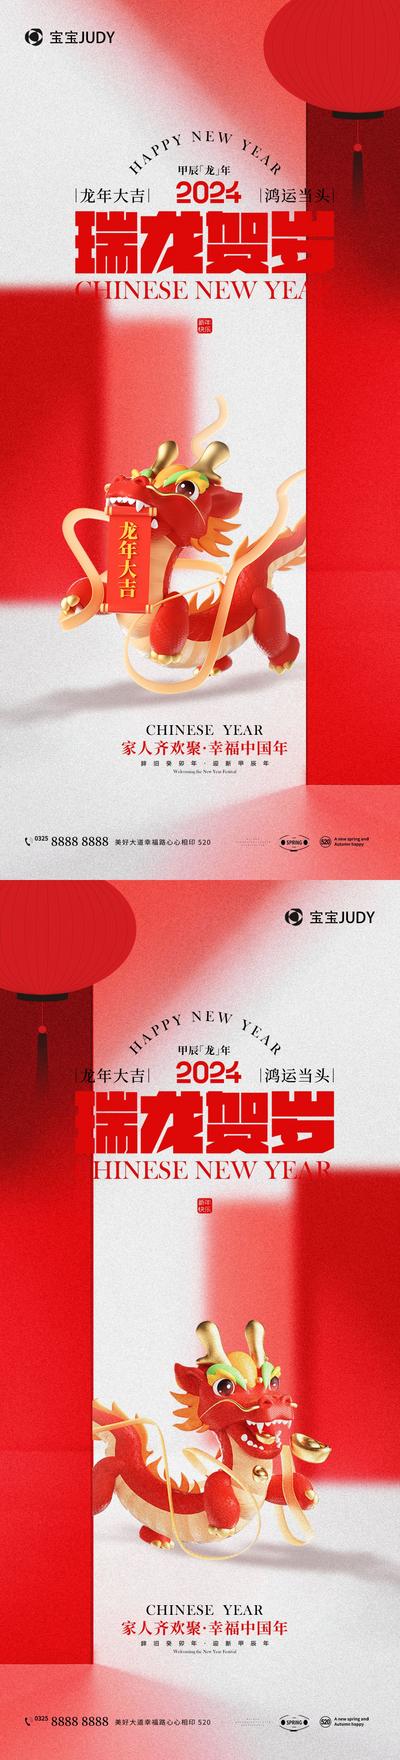 南门网 广告 海报 新年 龙年 2024 春节 祝福 系列 插画 贺岁